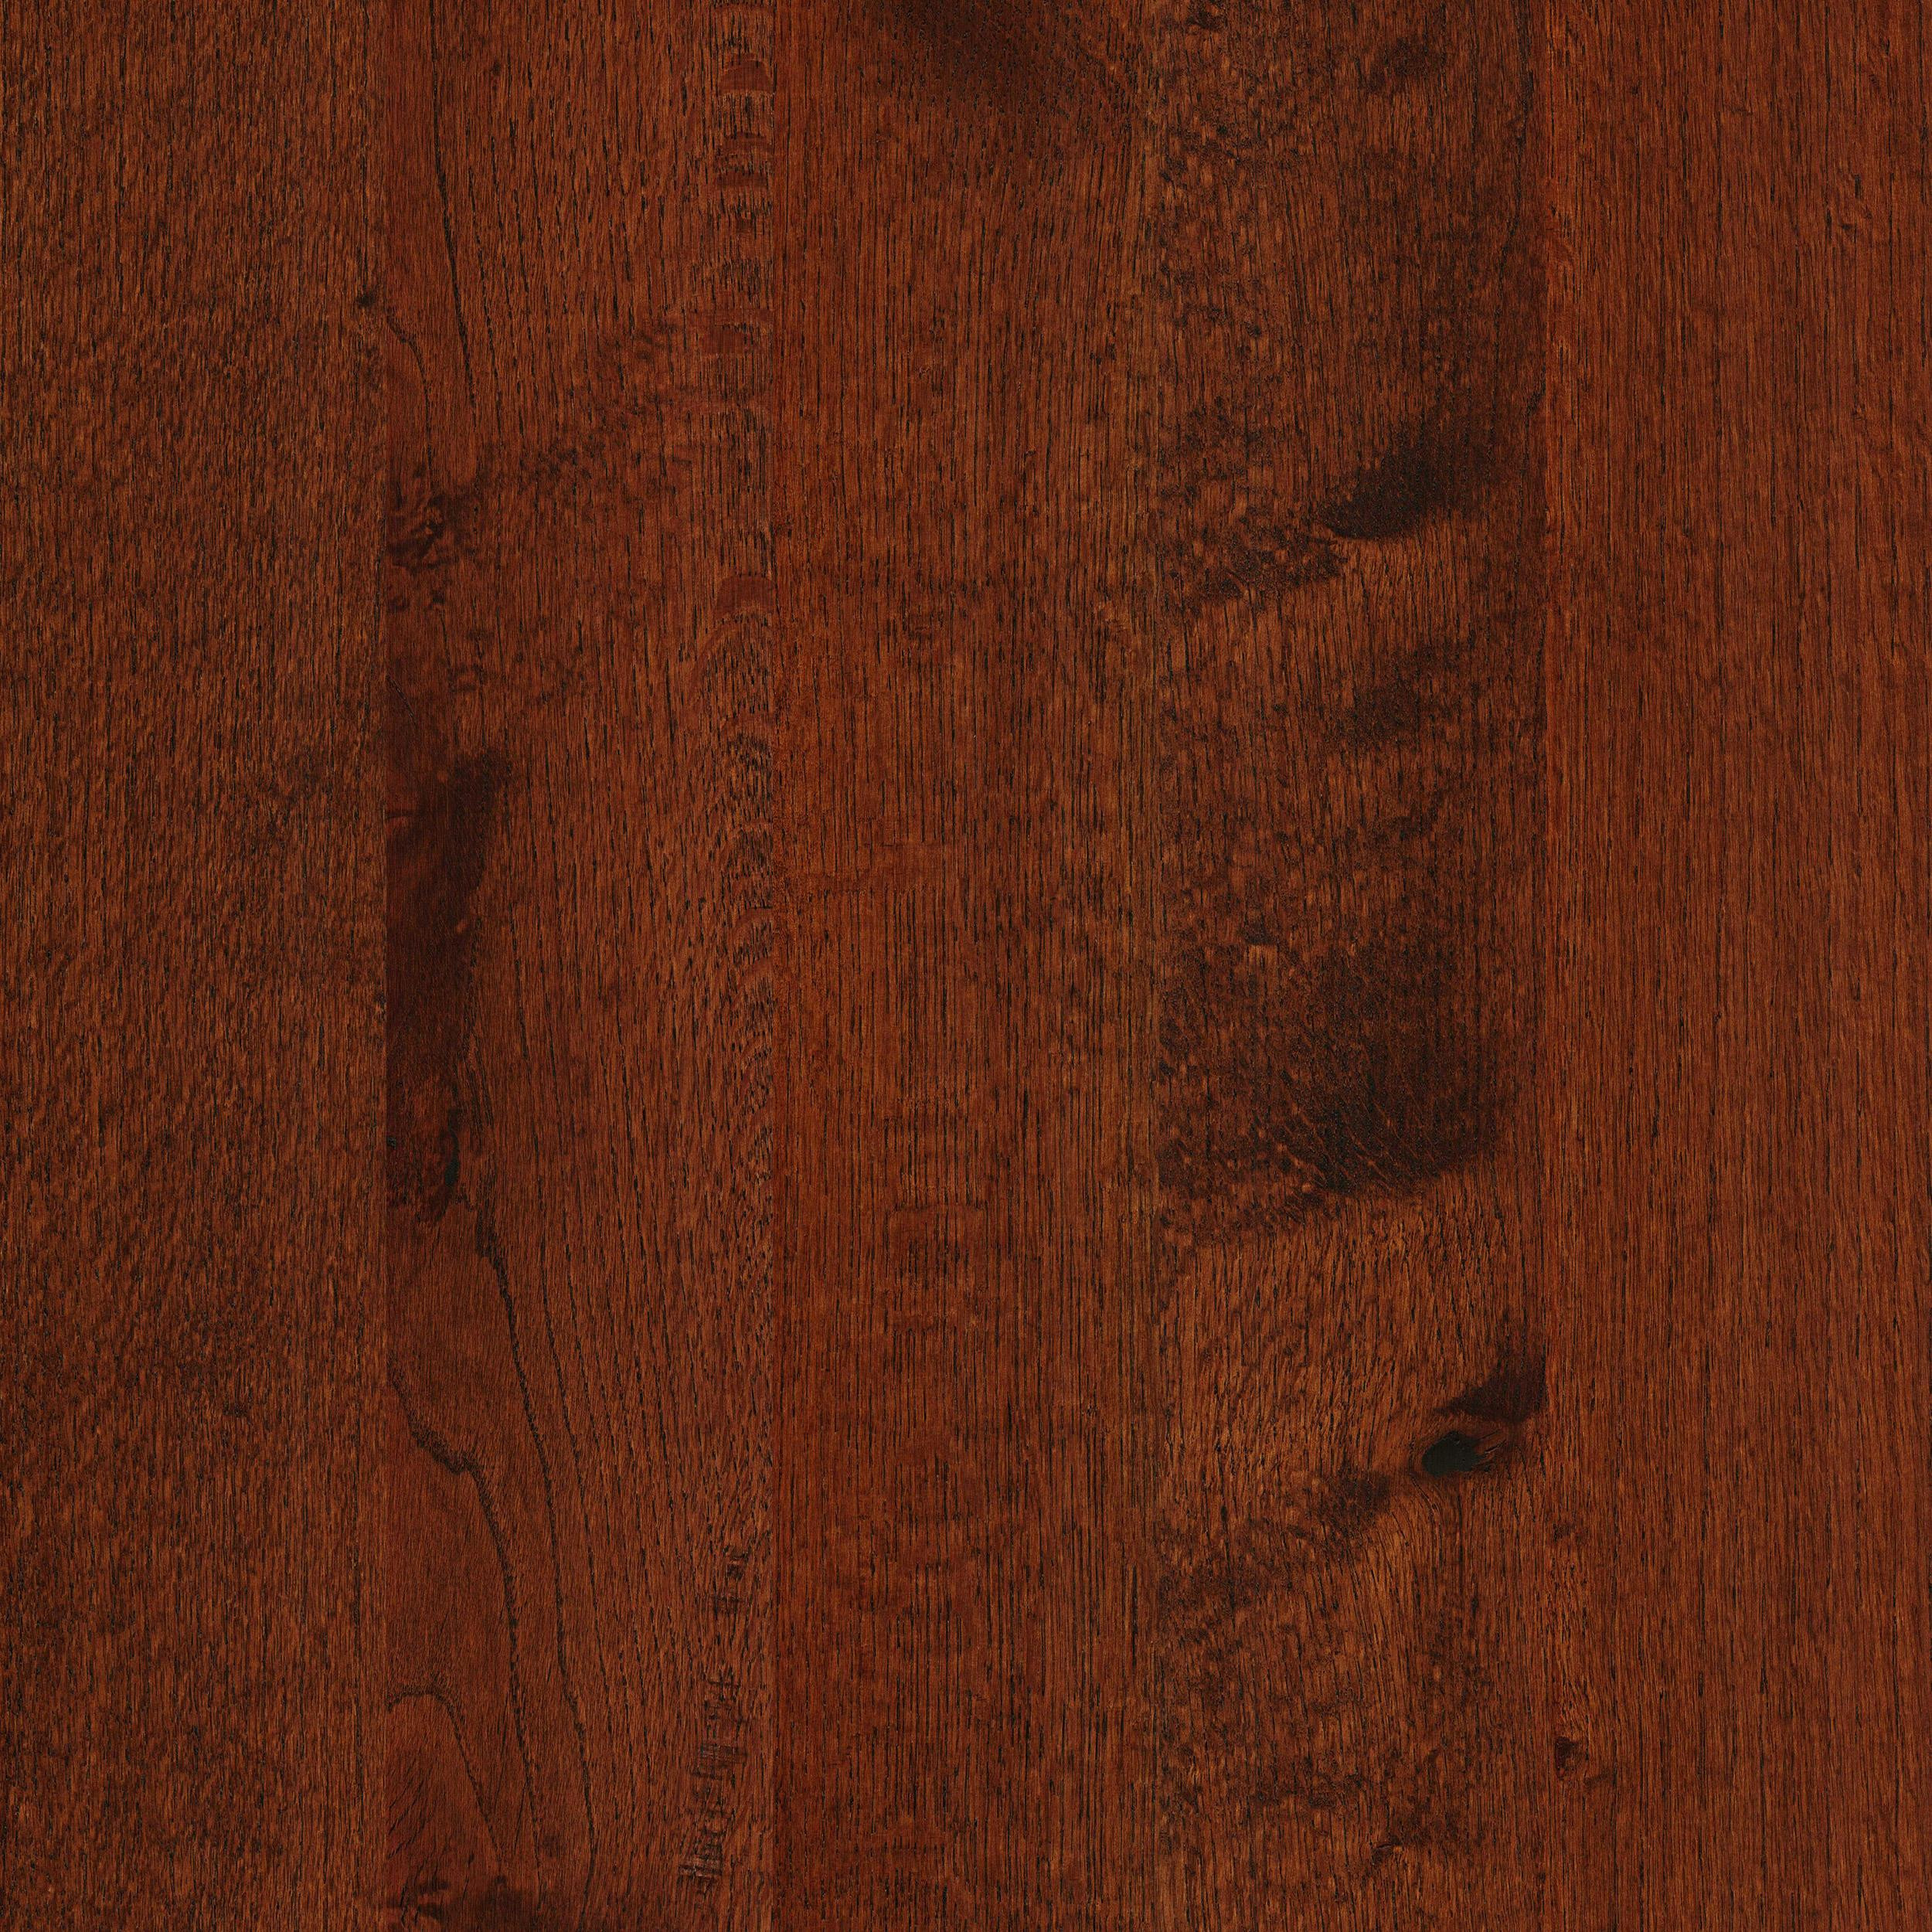 11 Ideal Vintage Oak Hardwood Flooring 2024 free download vintage oak hardwood flooring of timber hardwood red oak sorrell 5 wide solid hardwood flooring regarding red oak sorrell timber solid approved bk